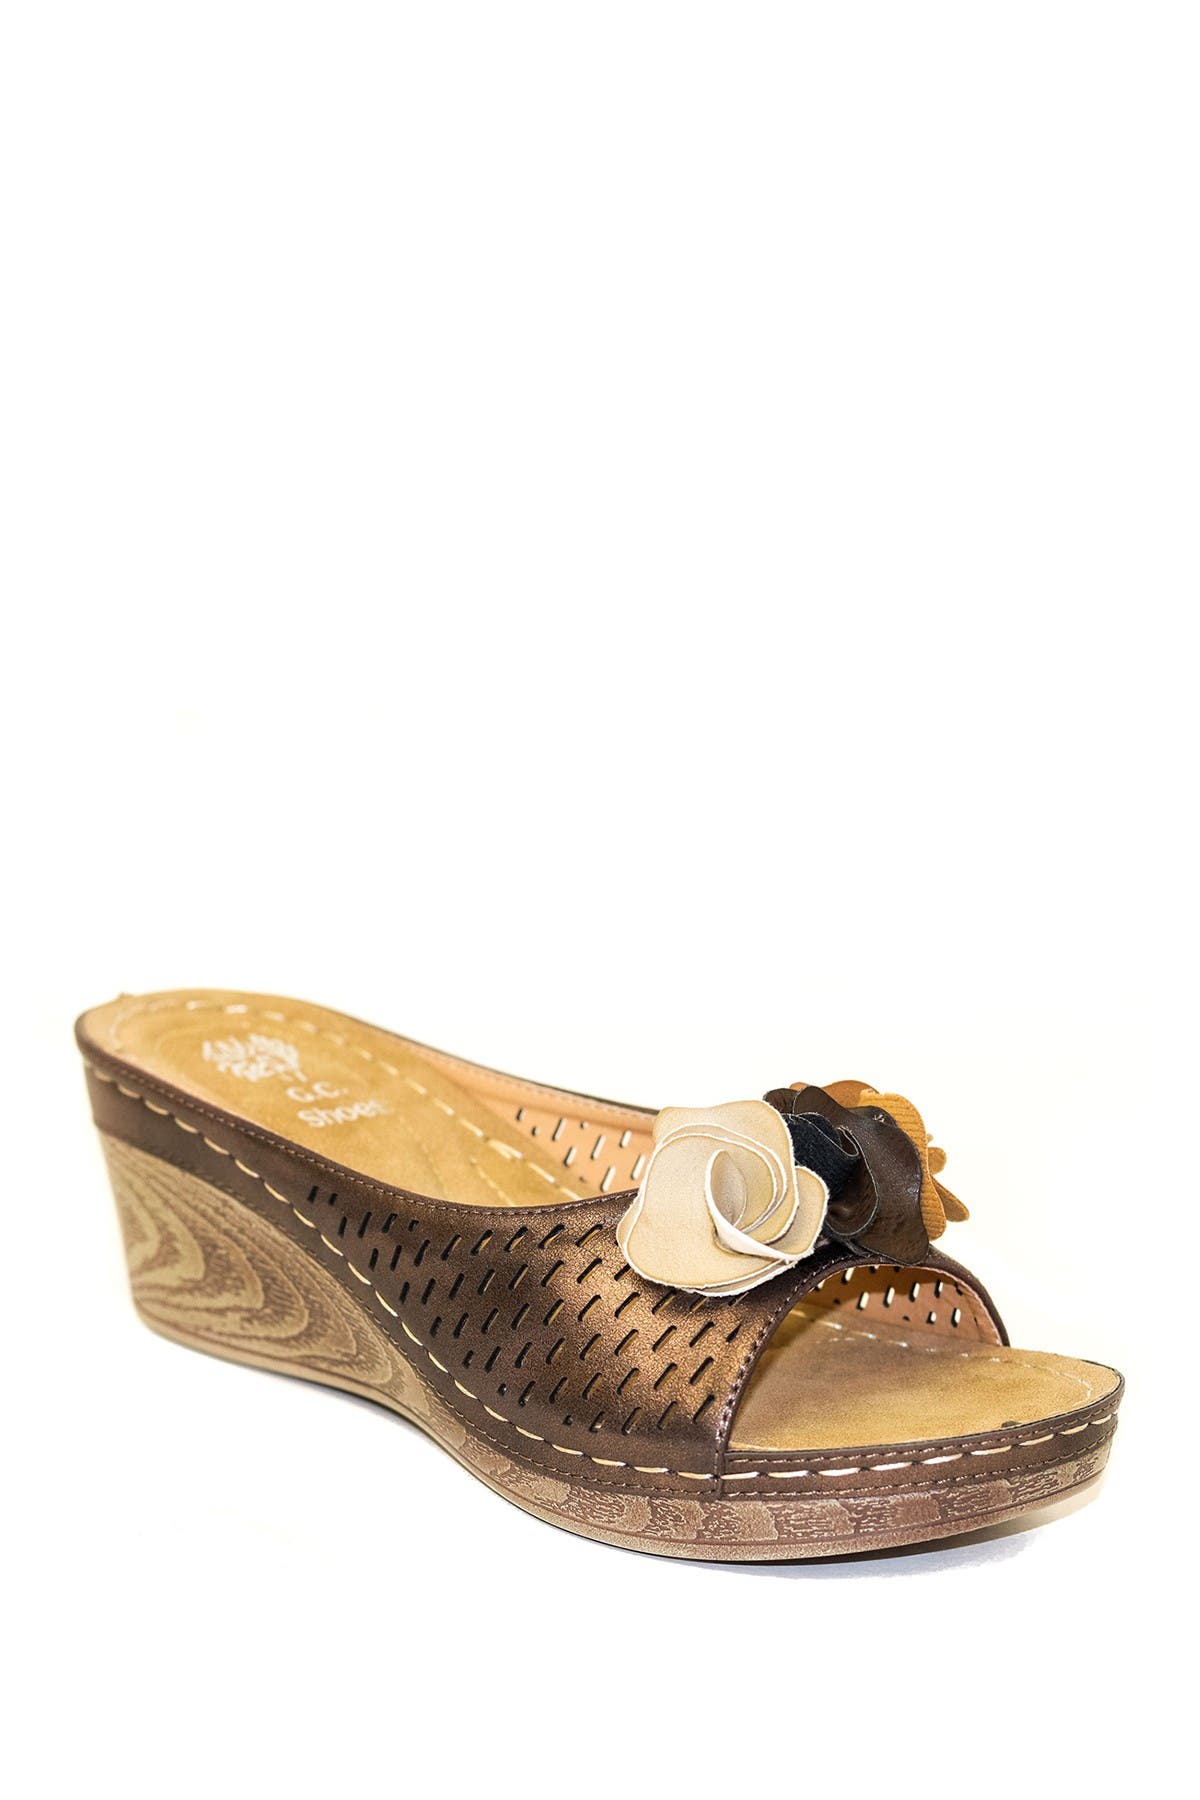 Gc Shoes Juliet Bronze Wedge Sandals In Brown | ModeSens